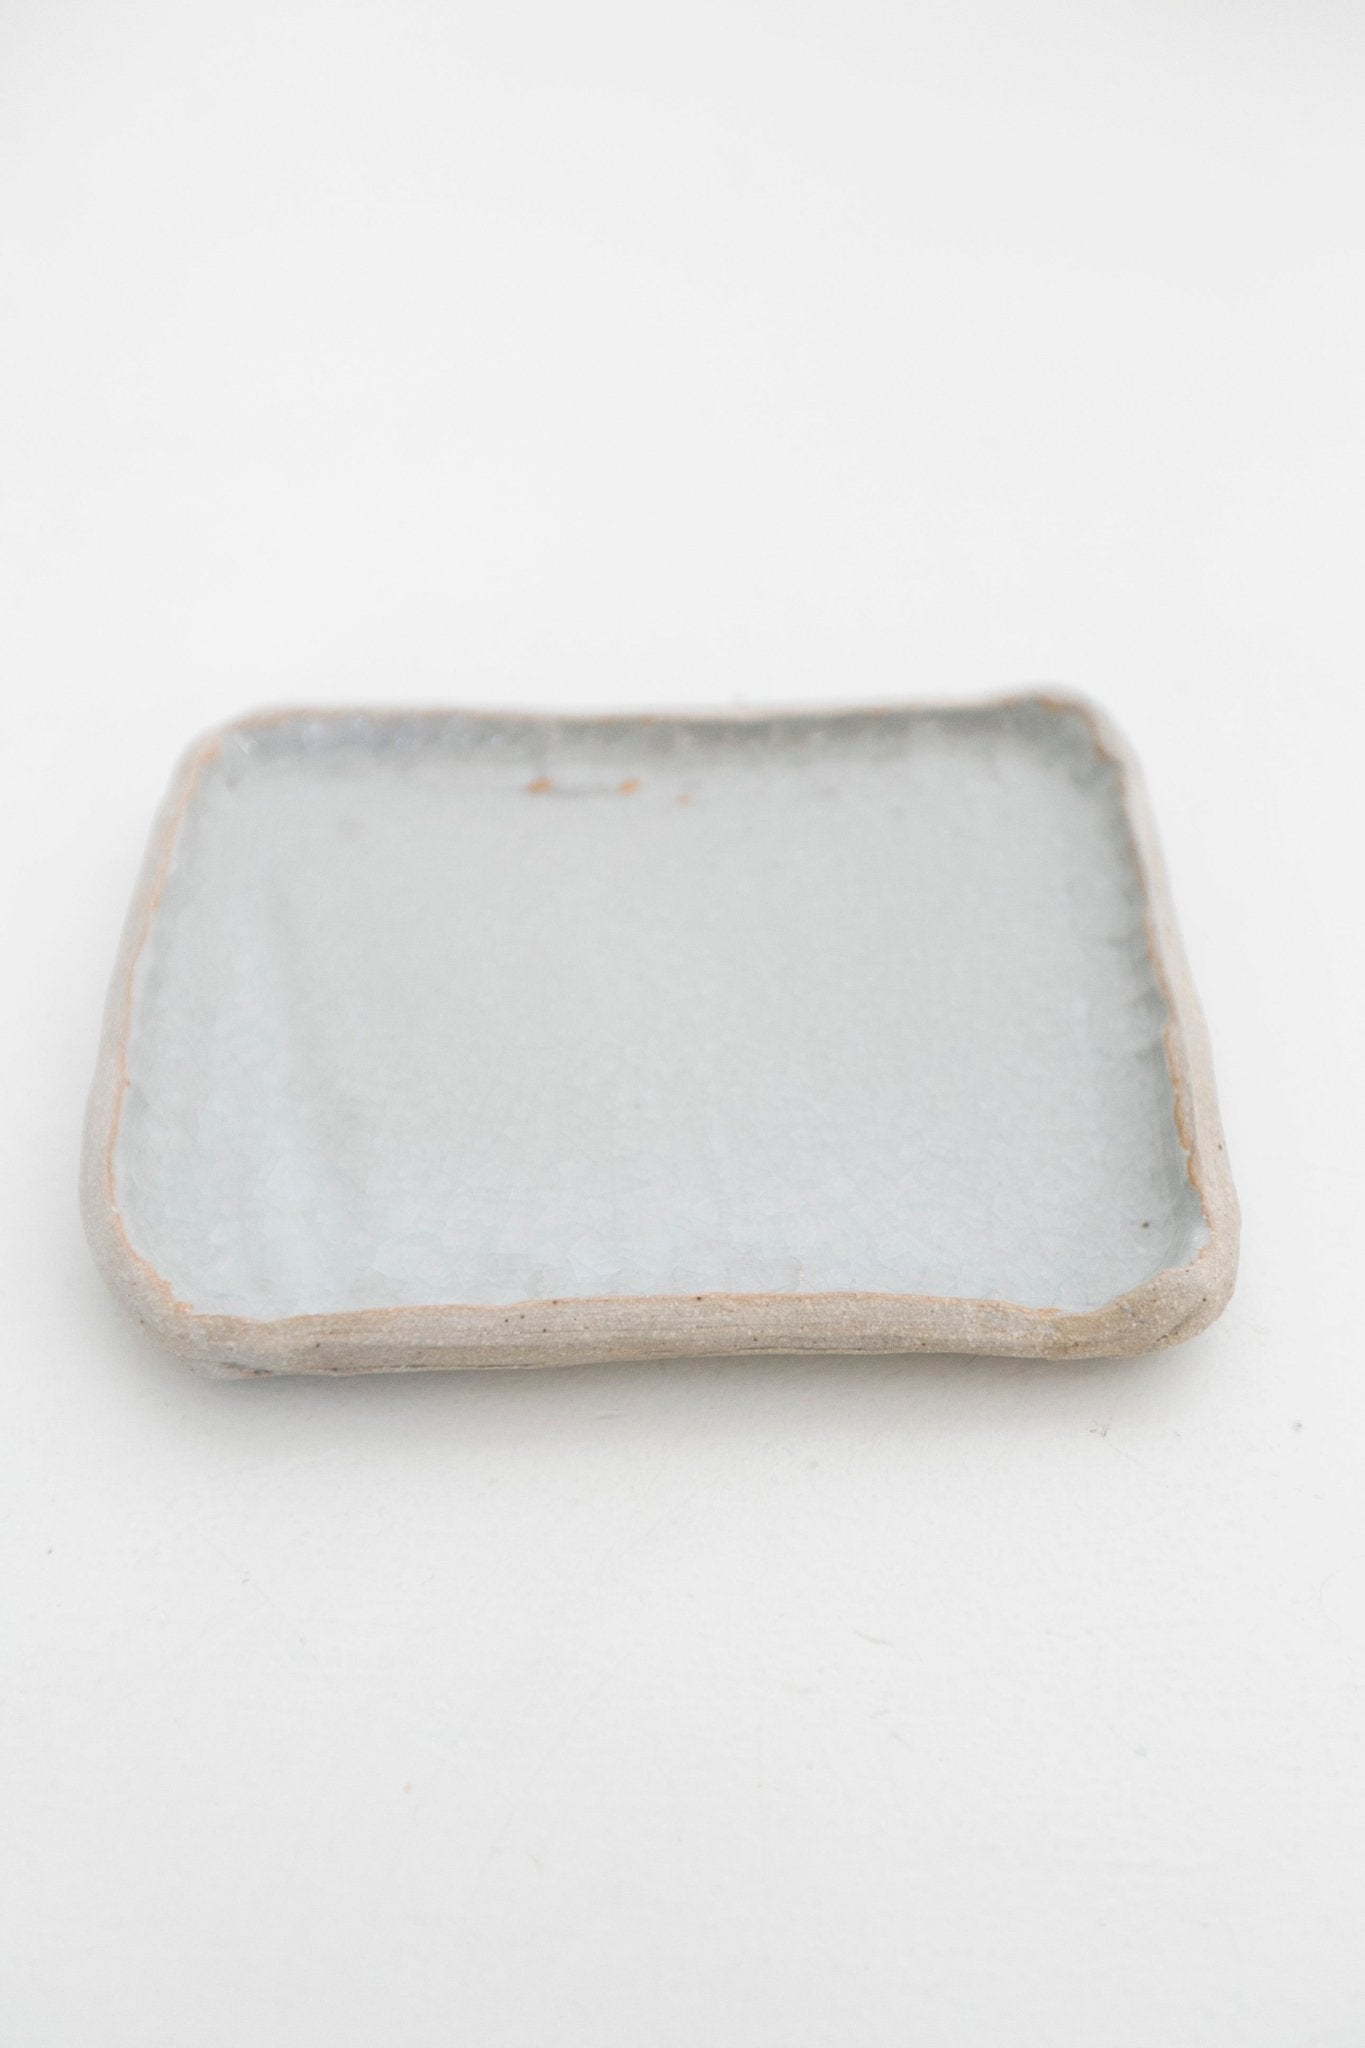 Aburi Ceramics - Square Plate - Ensemble Studios